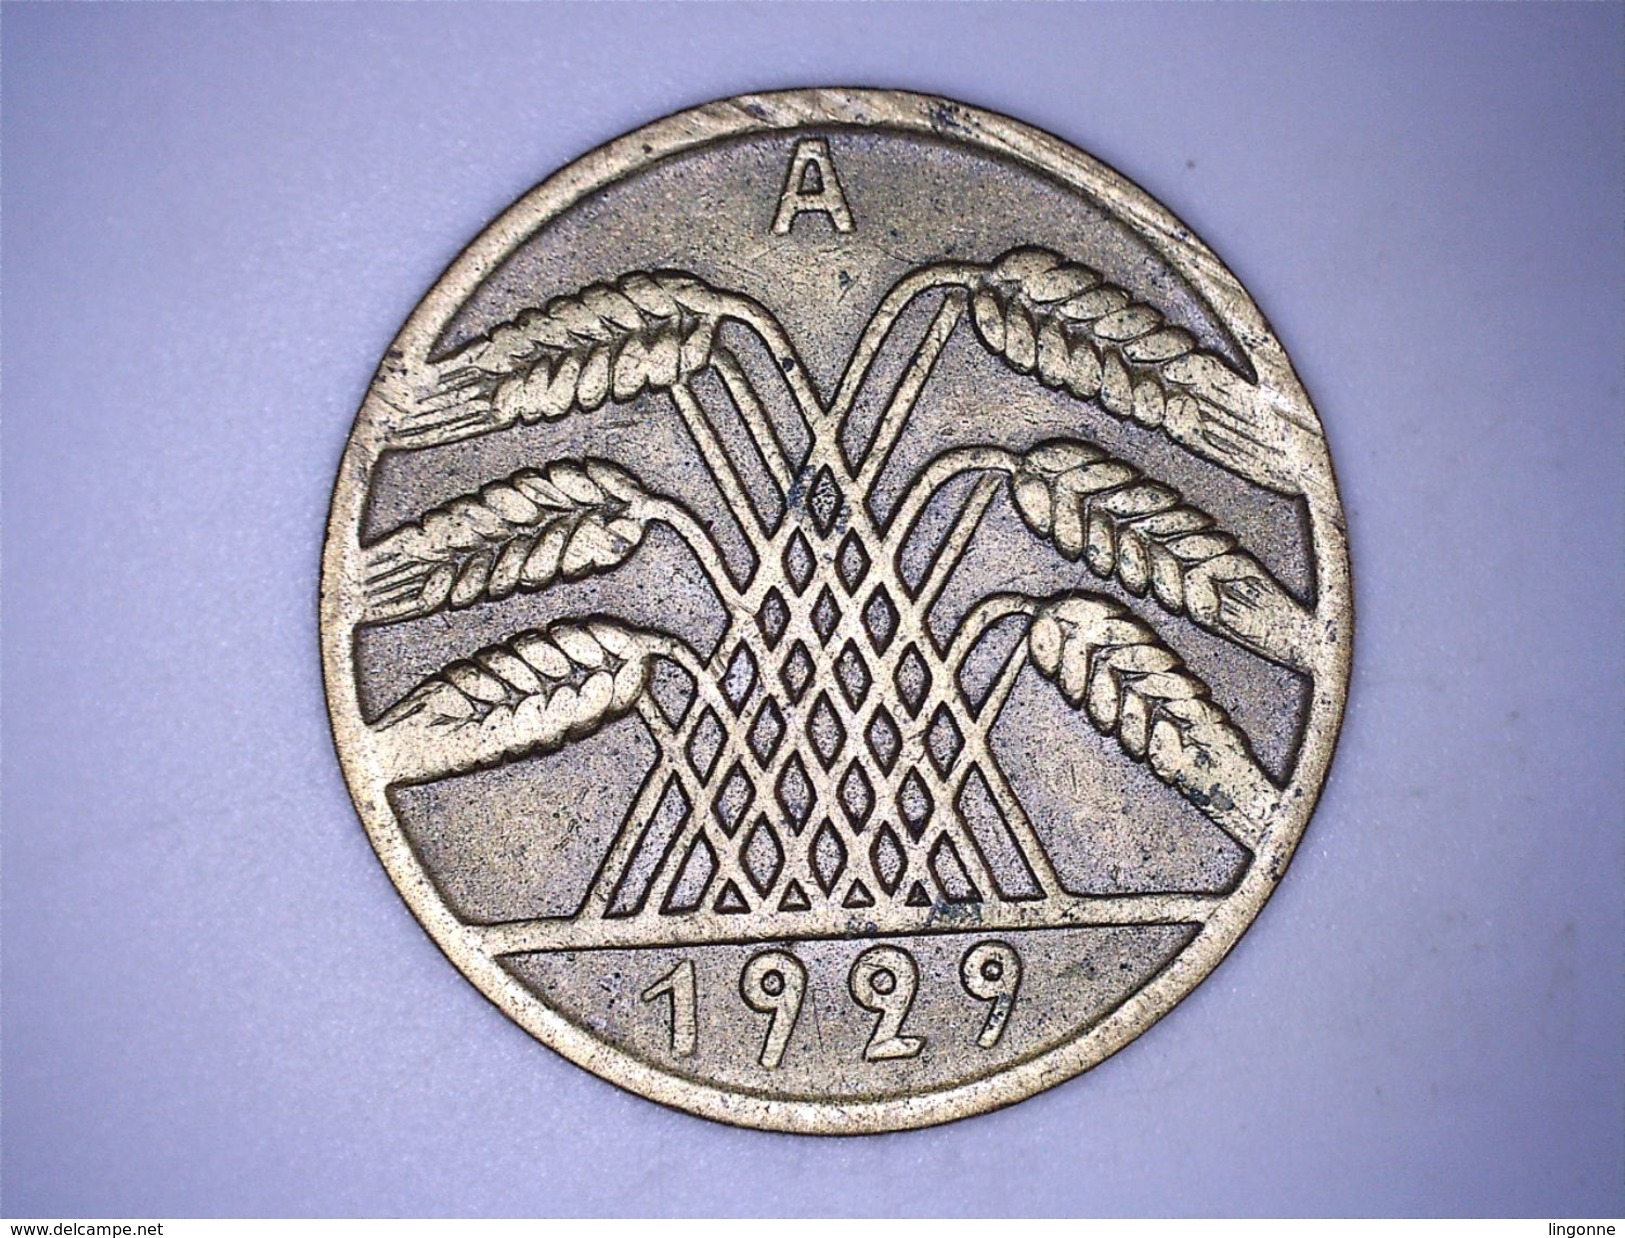 ALLEMAGNE - 10 REICHSPFENNIG 1929 A - 10 Rentenpfennig & 10 Reichspfennig